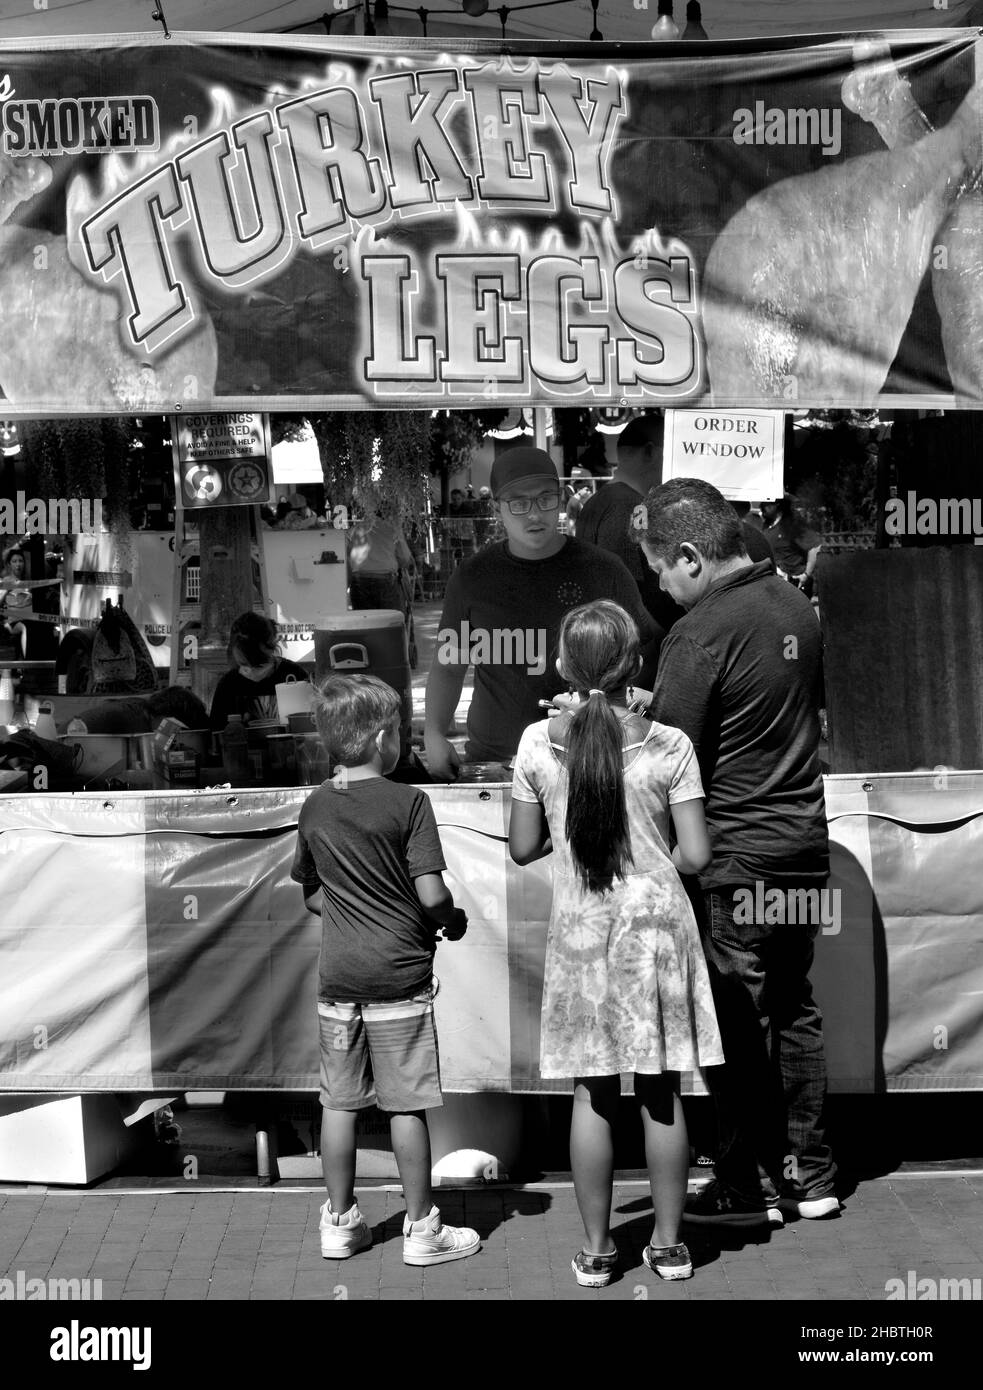 Un père achète des pattes de dinde fumées pour ses deux enfants à un vendeur de nourriture lors d'un festival en plein air à Santa Fe, Nouveau-Mexique. Banque D'Images